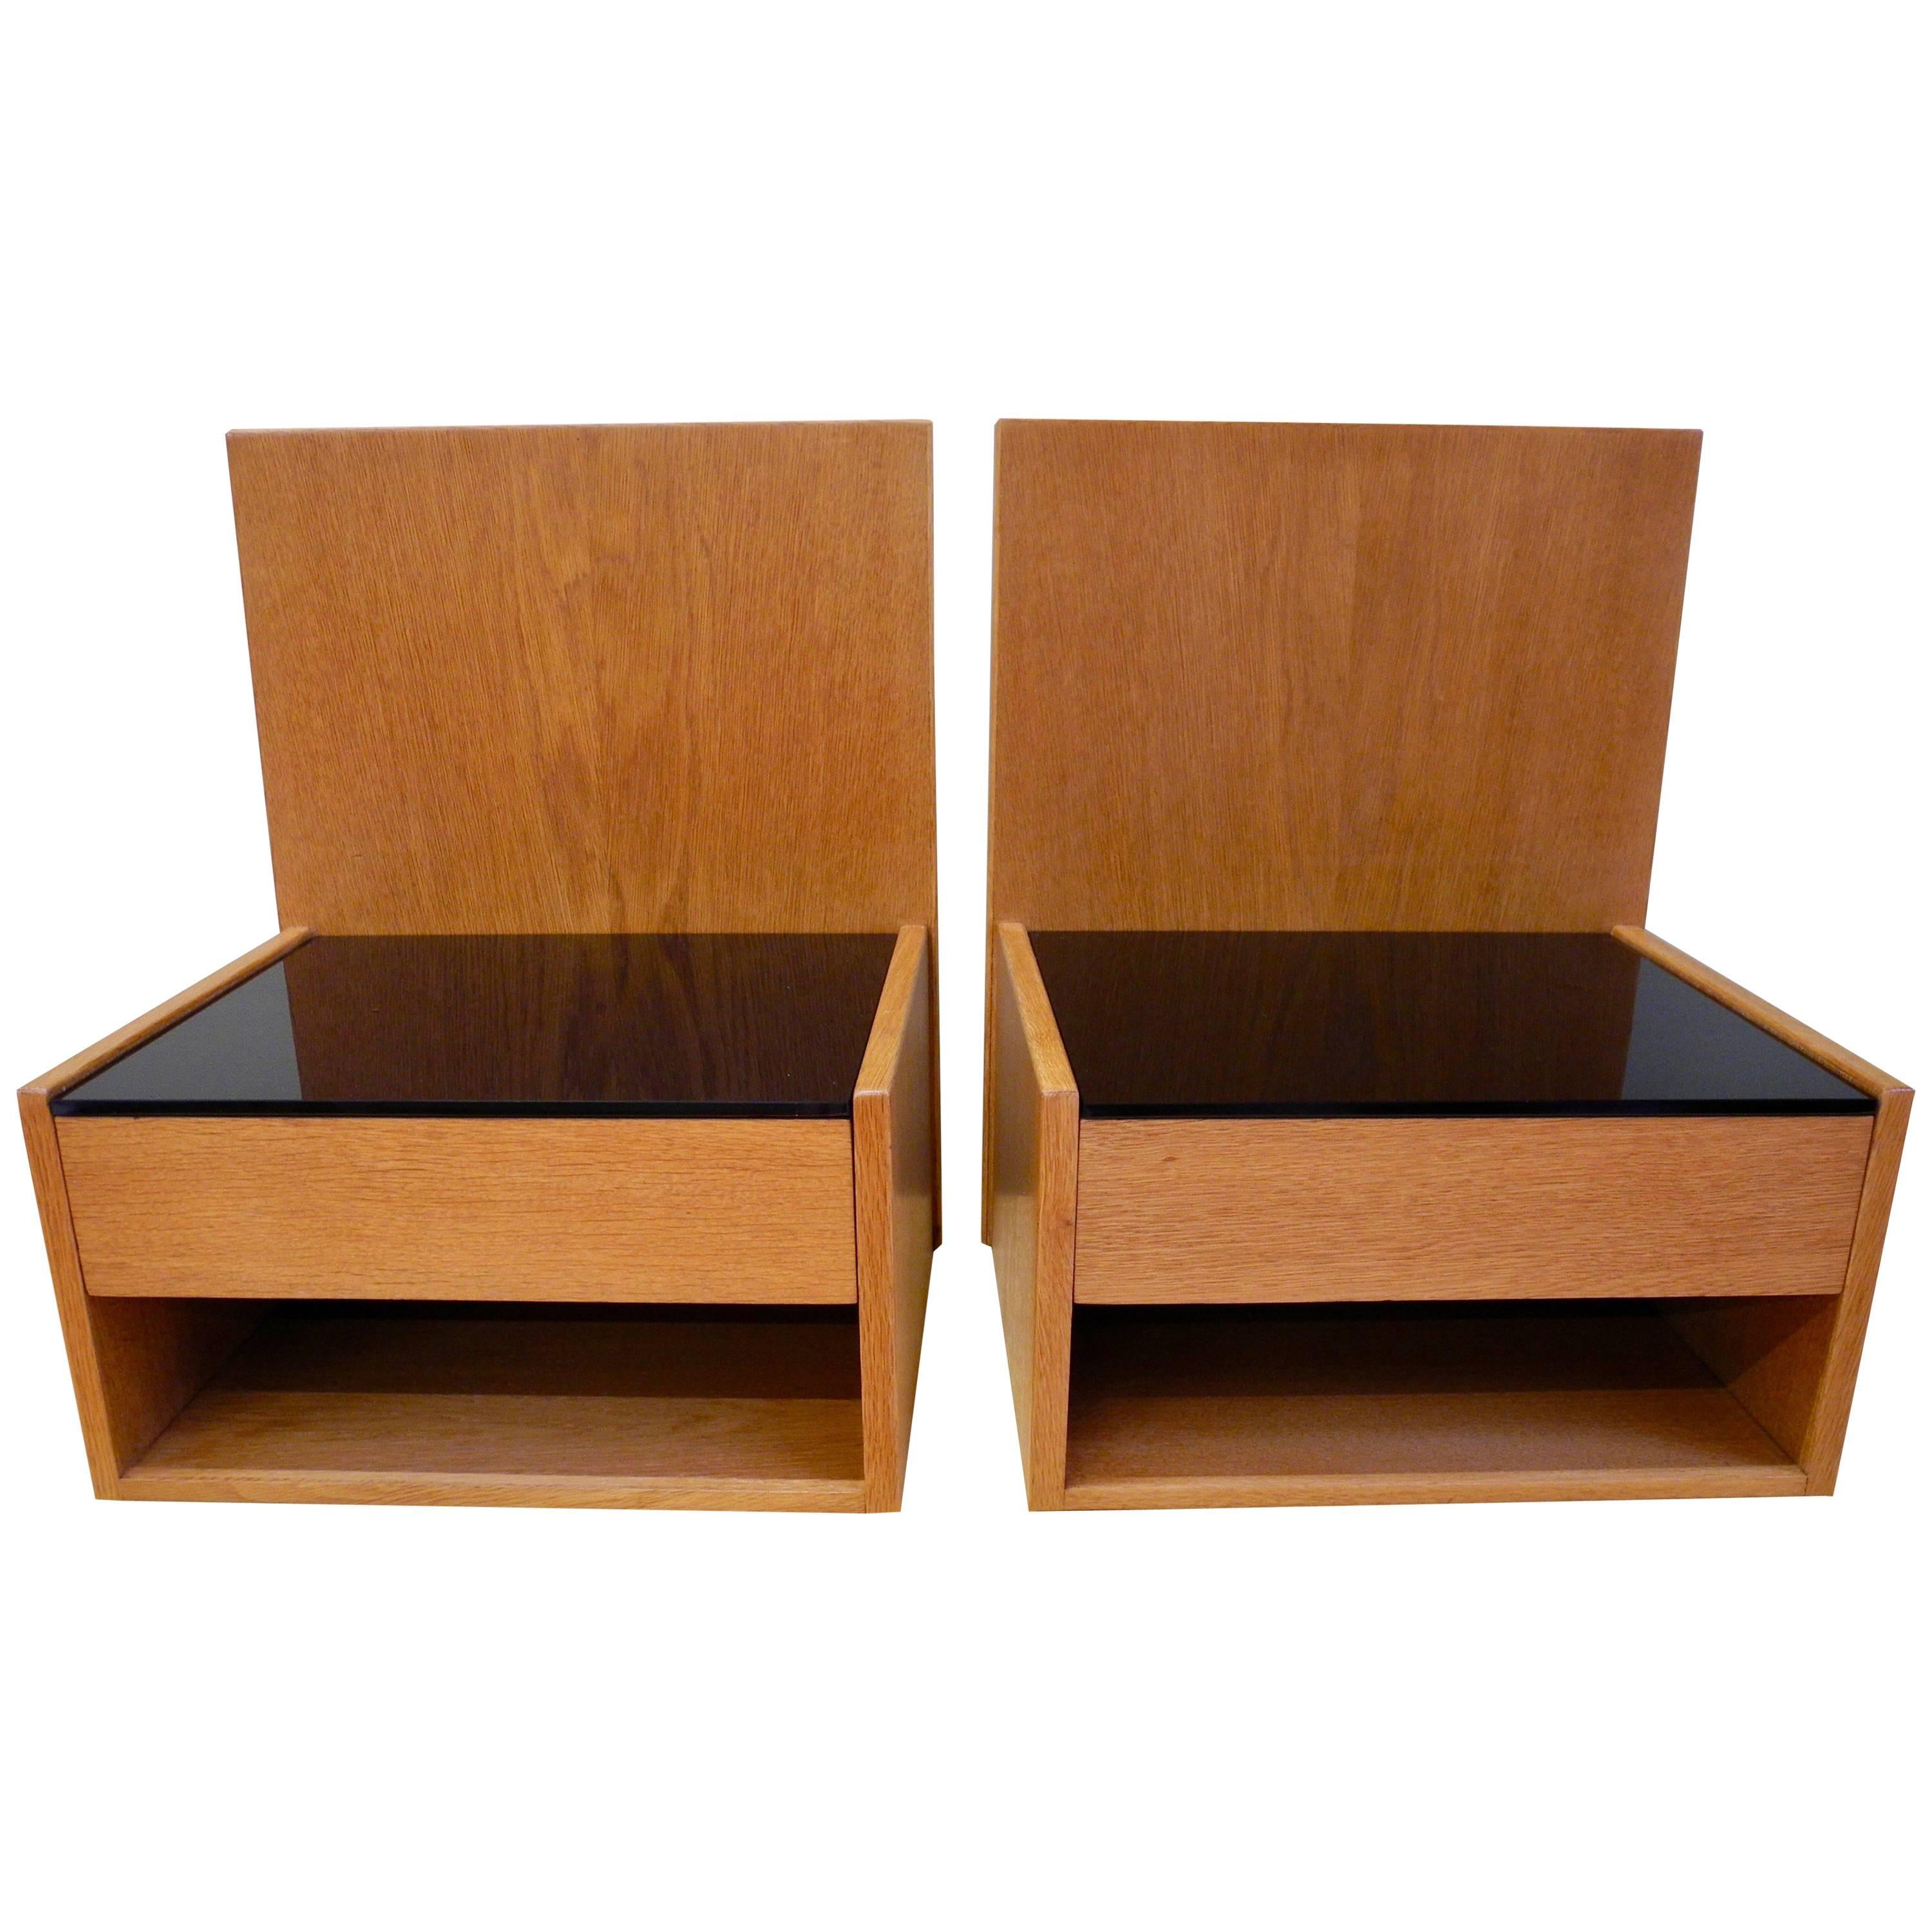 Pair of Danish Modern Teak Nightstands Designed by Hans Wegner For Sale